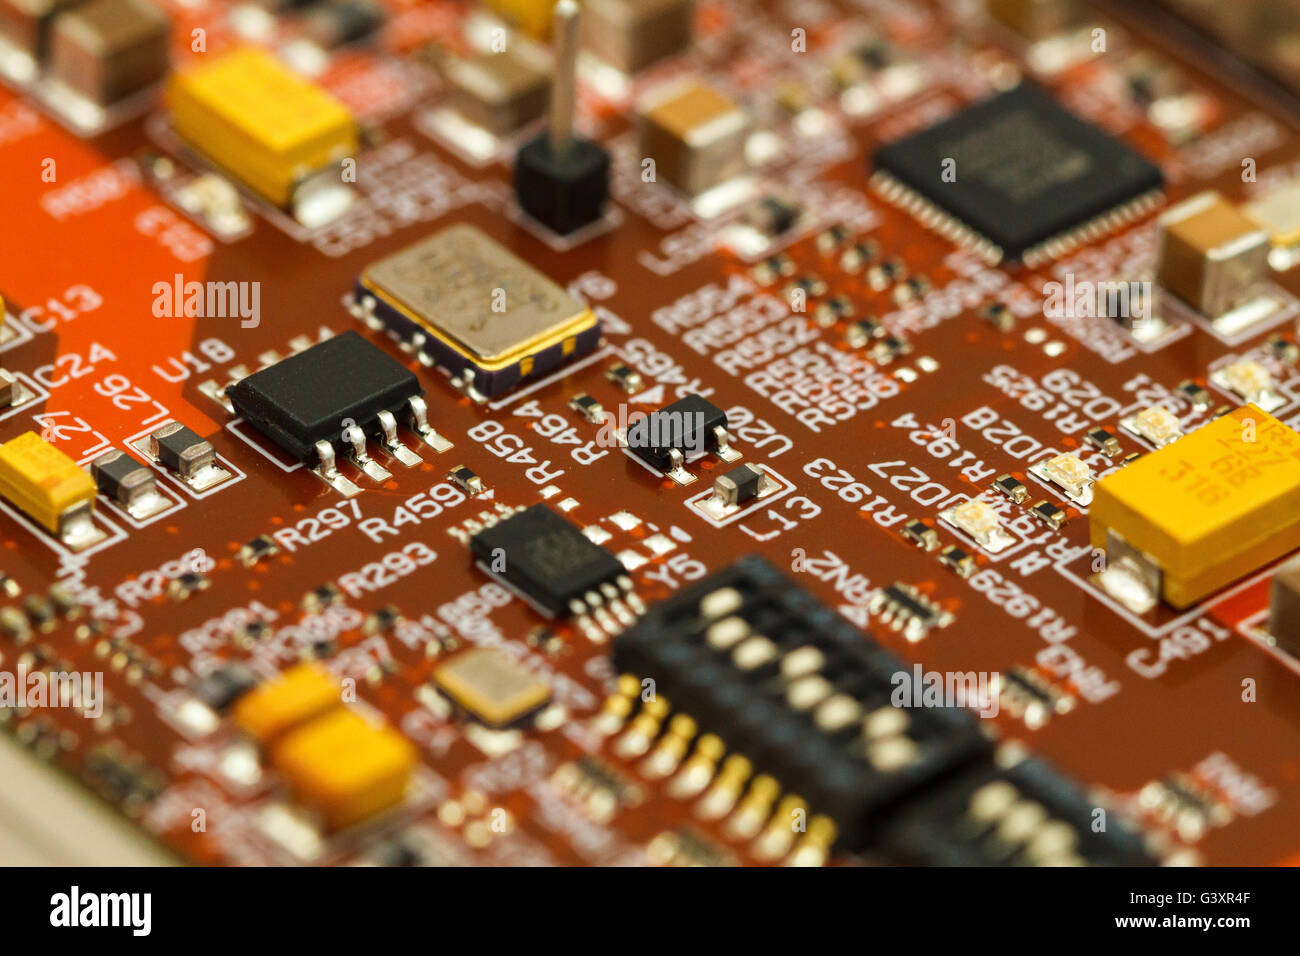 Scheda a circuito stampato con ICs, condensatori a chip al tantalio, condensatori e resistori chip. Foto Stock